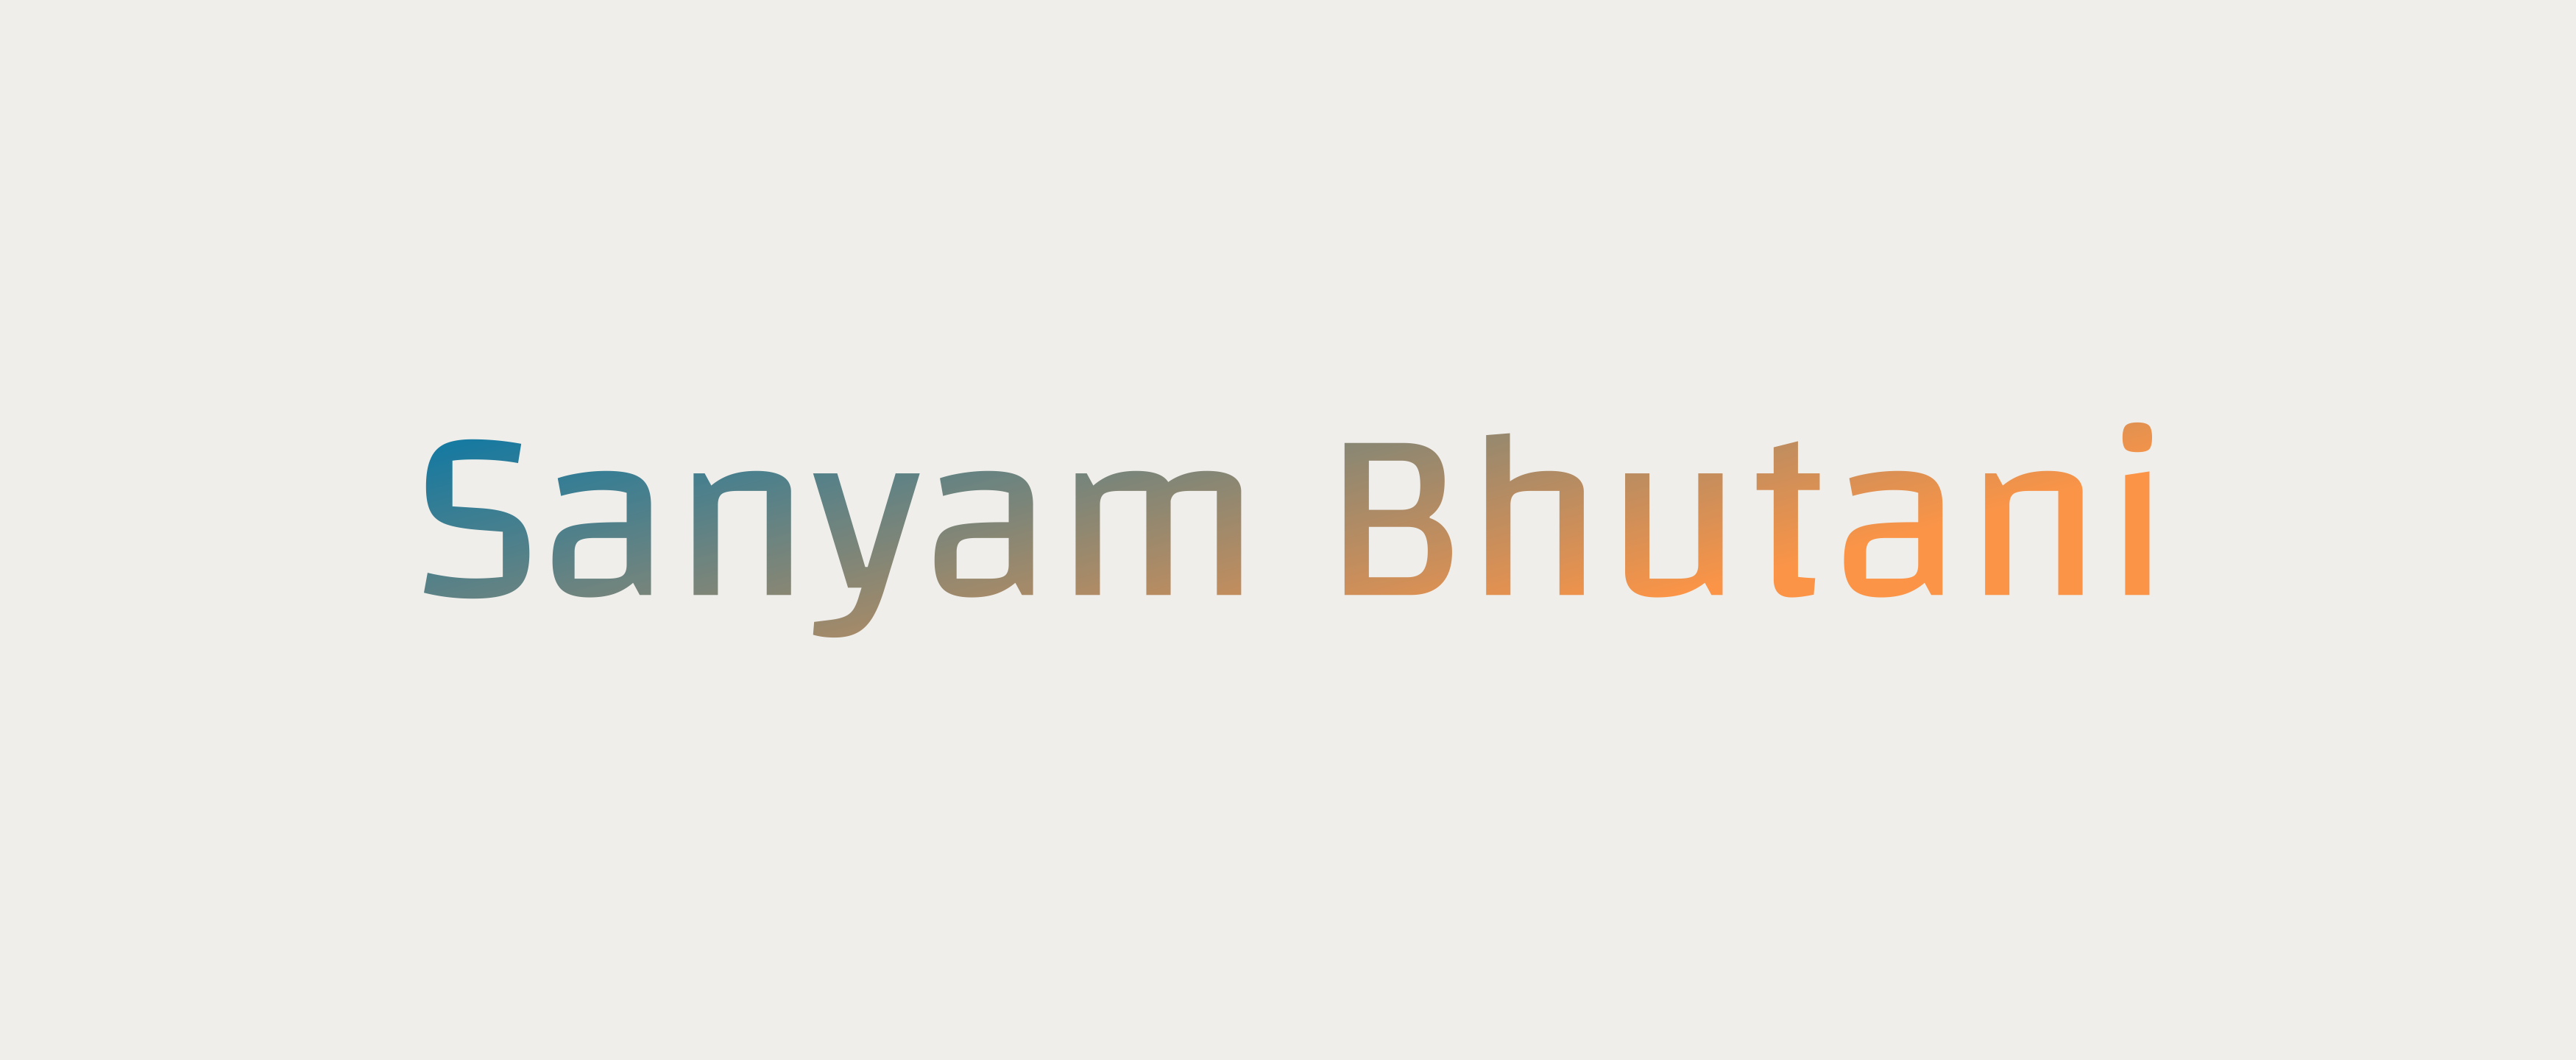 Sanyam Bhutani's blog